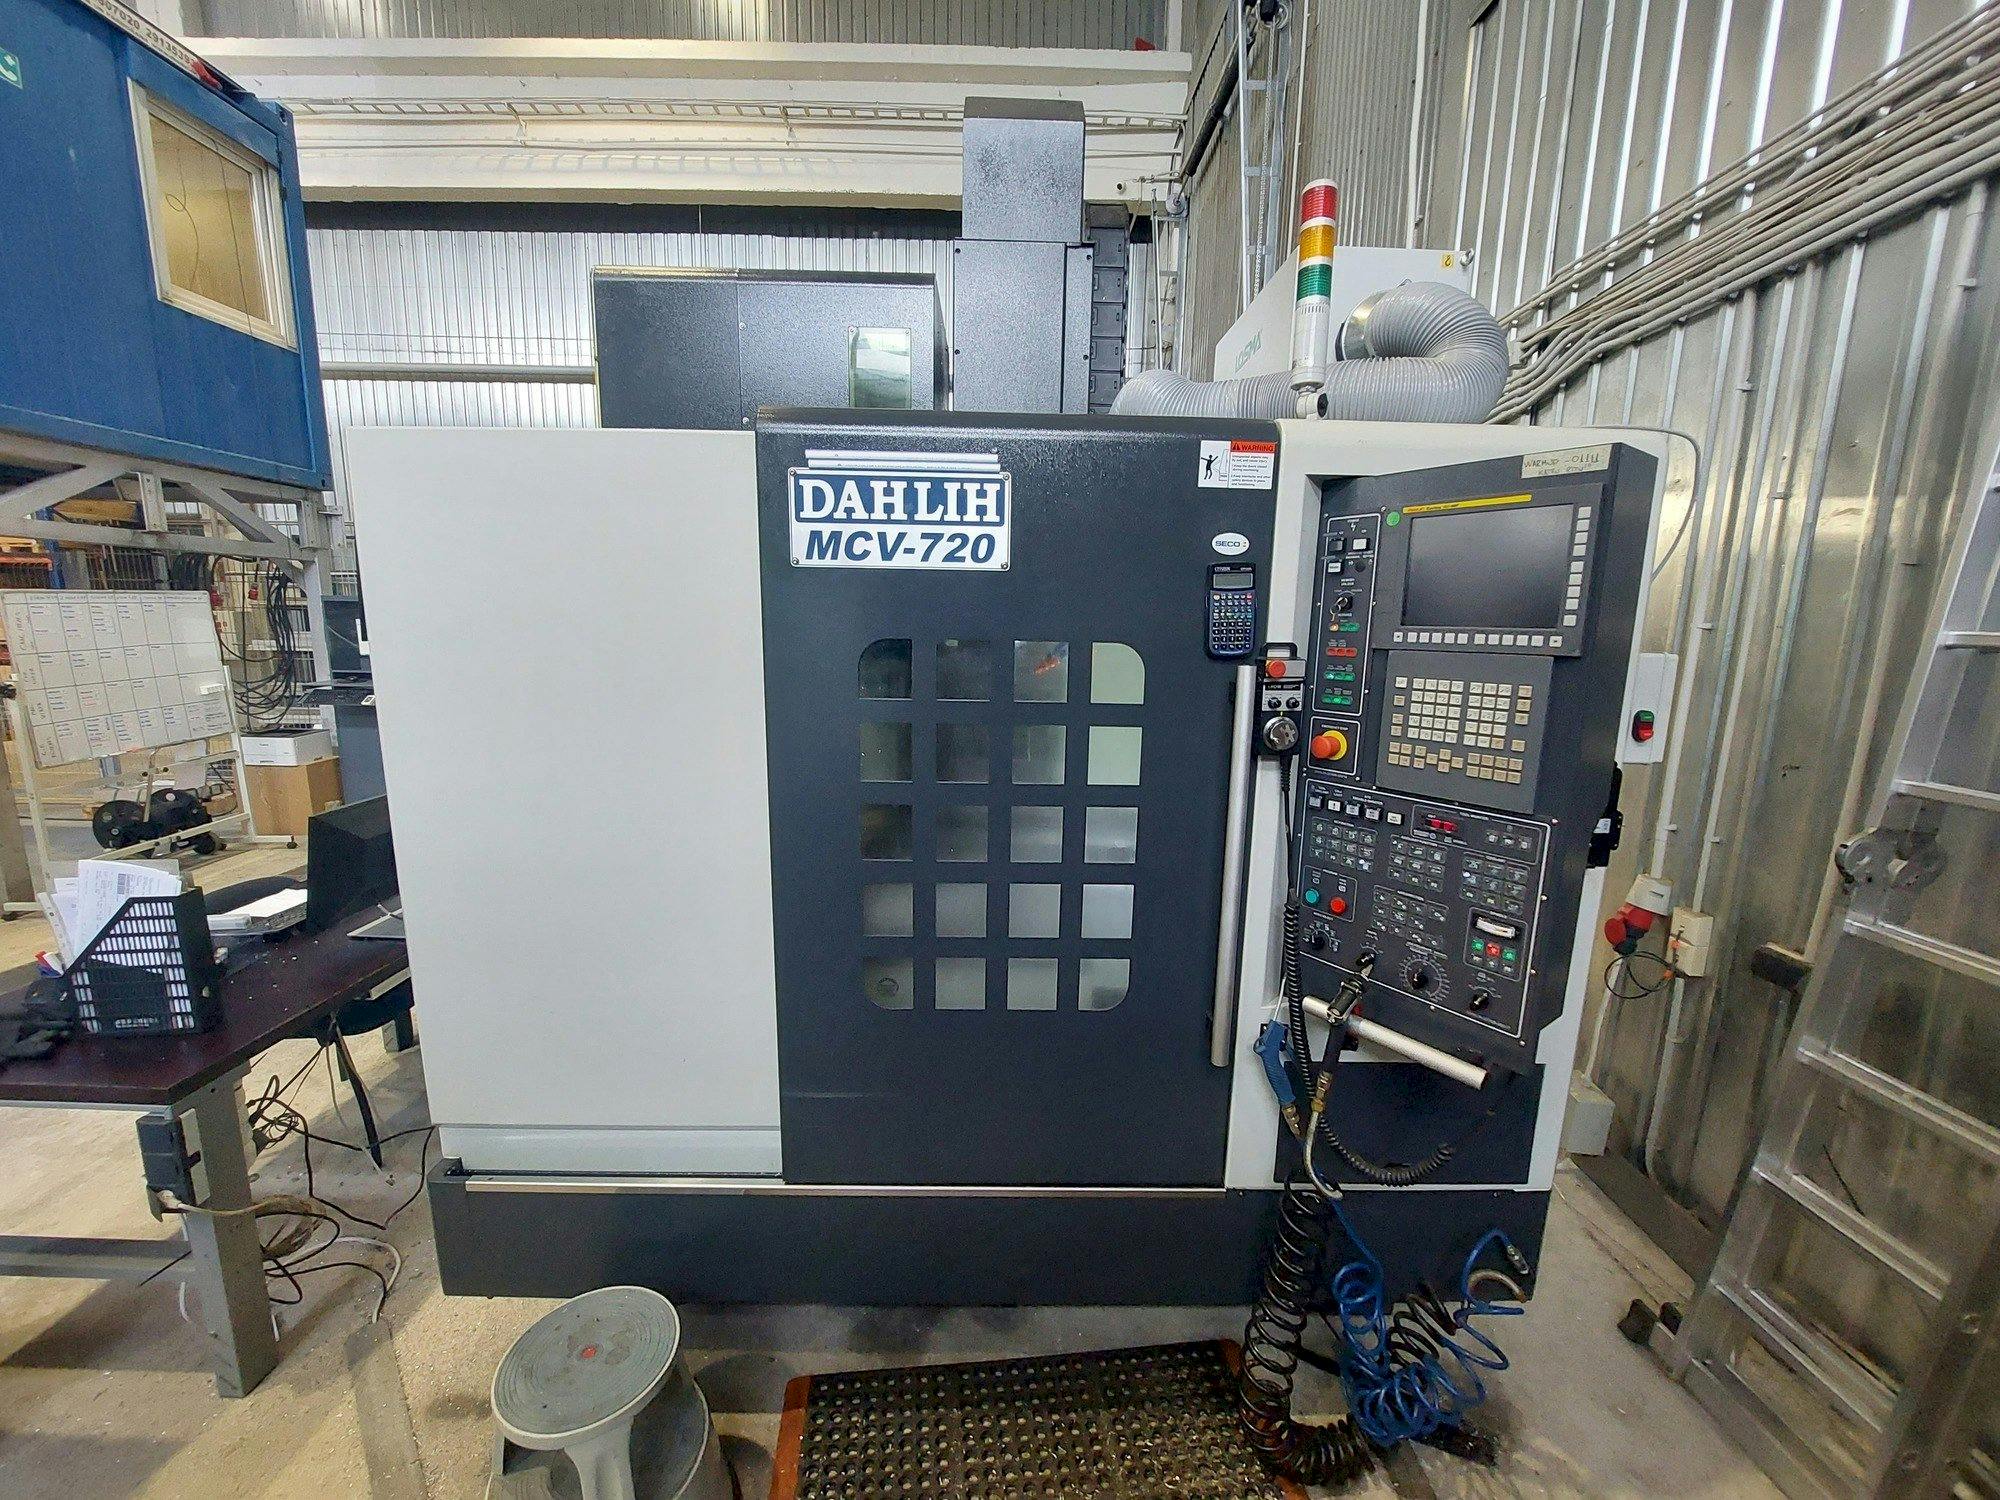 Vooraanzicht  van DAH LIH MCV-720  machine